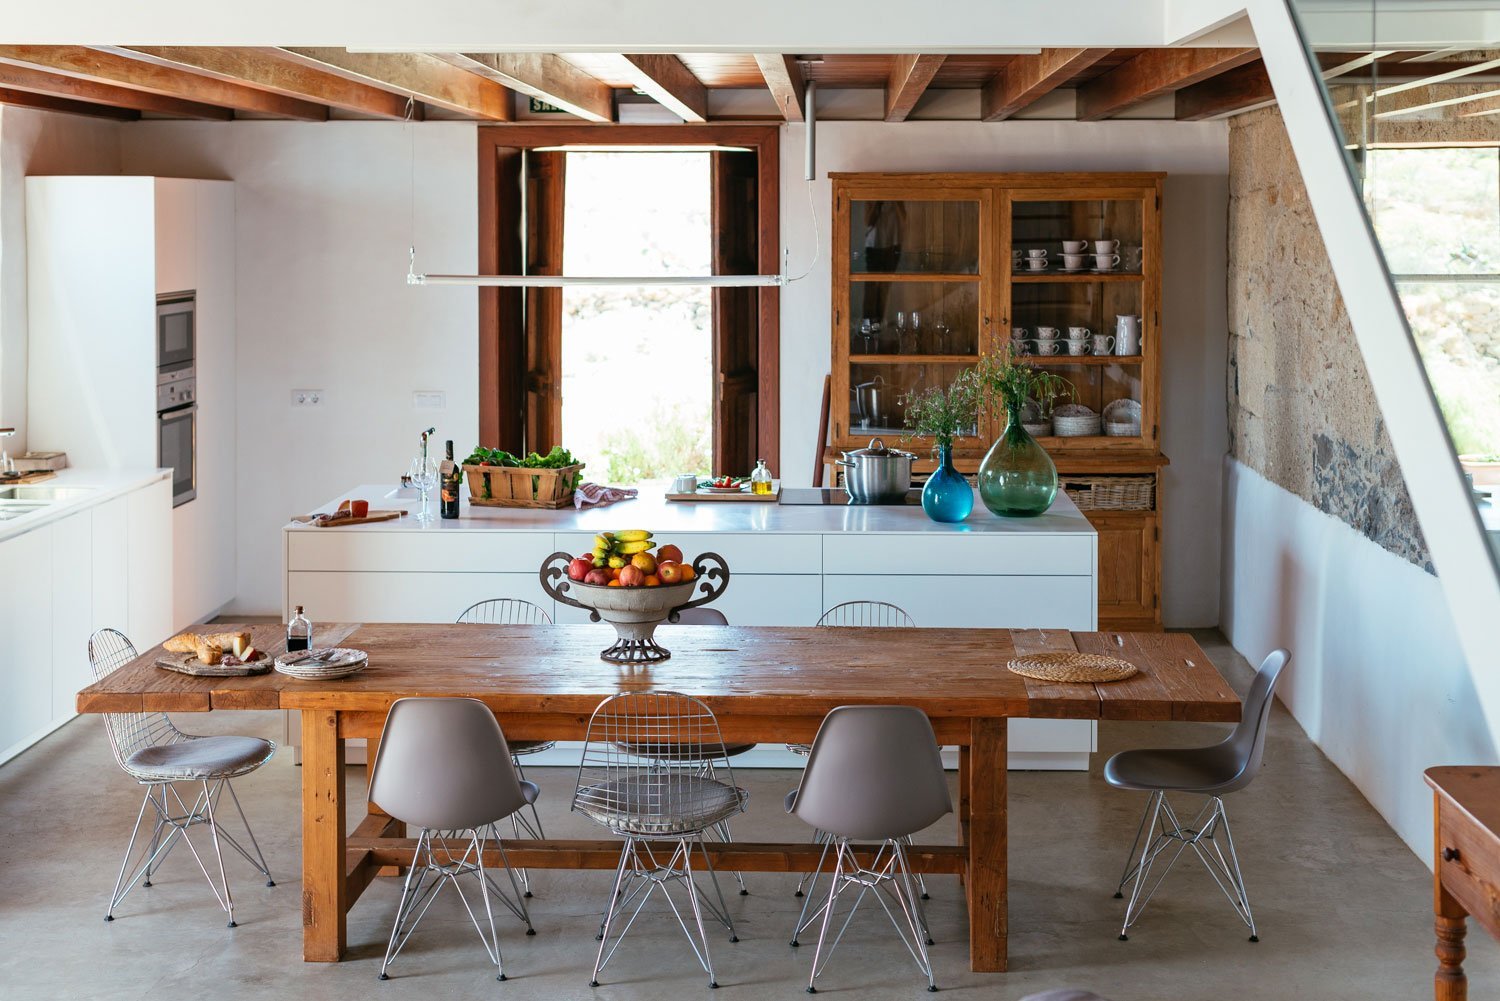 Una vista adicional de la cocina abierta y totalmente equipada, todos los materiales utilizados son de alta calidad - La Casa Principal.